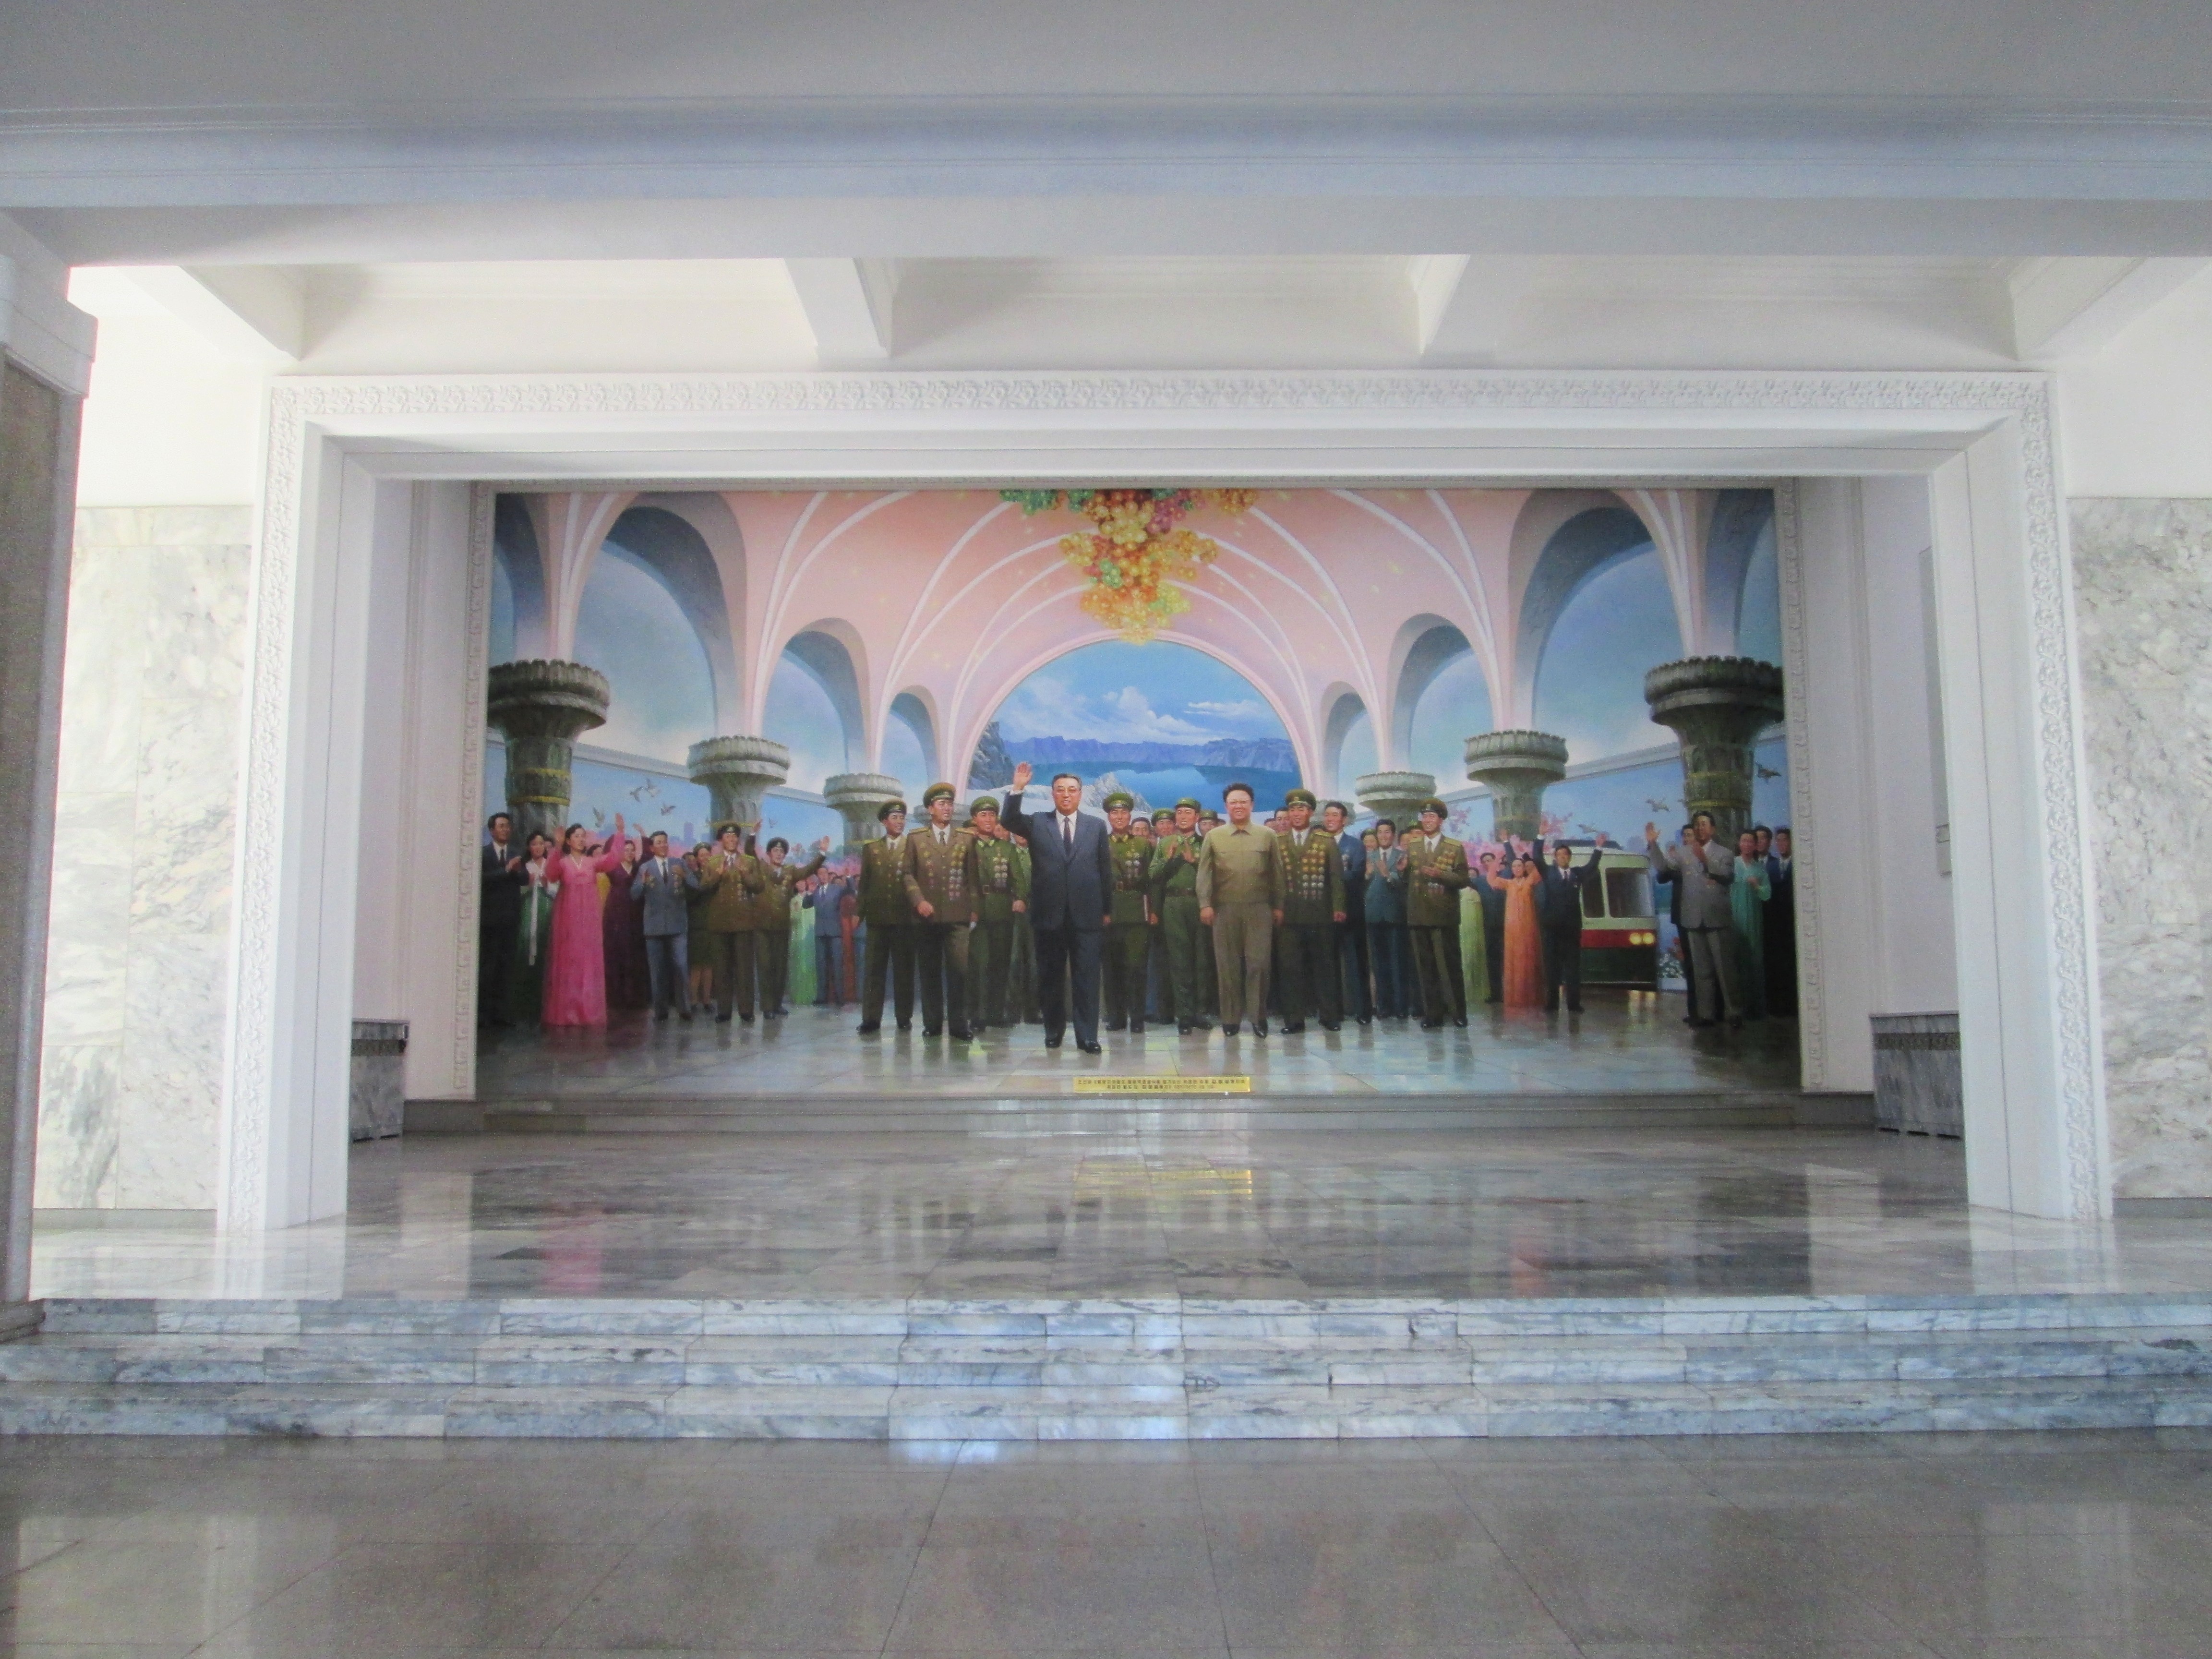 Ein Monumentales Wandgemälde zeigt die verstorbenen Führer Kim Jong Un und Kim Jong Il umgeben von Militär und einer jubelnden Menschenmasse.